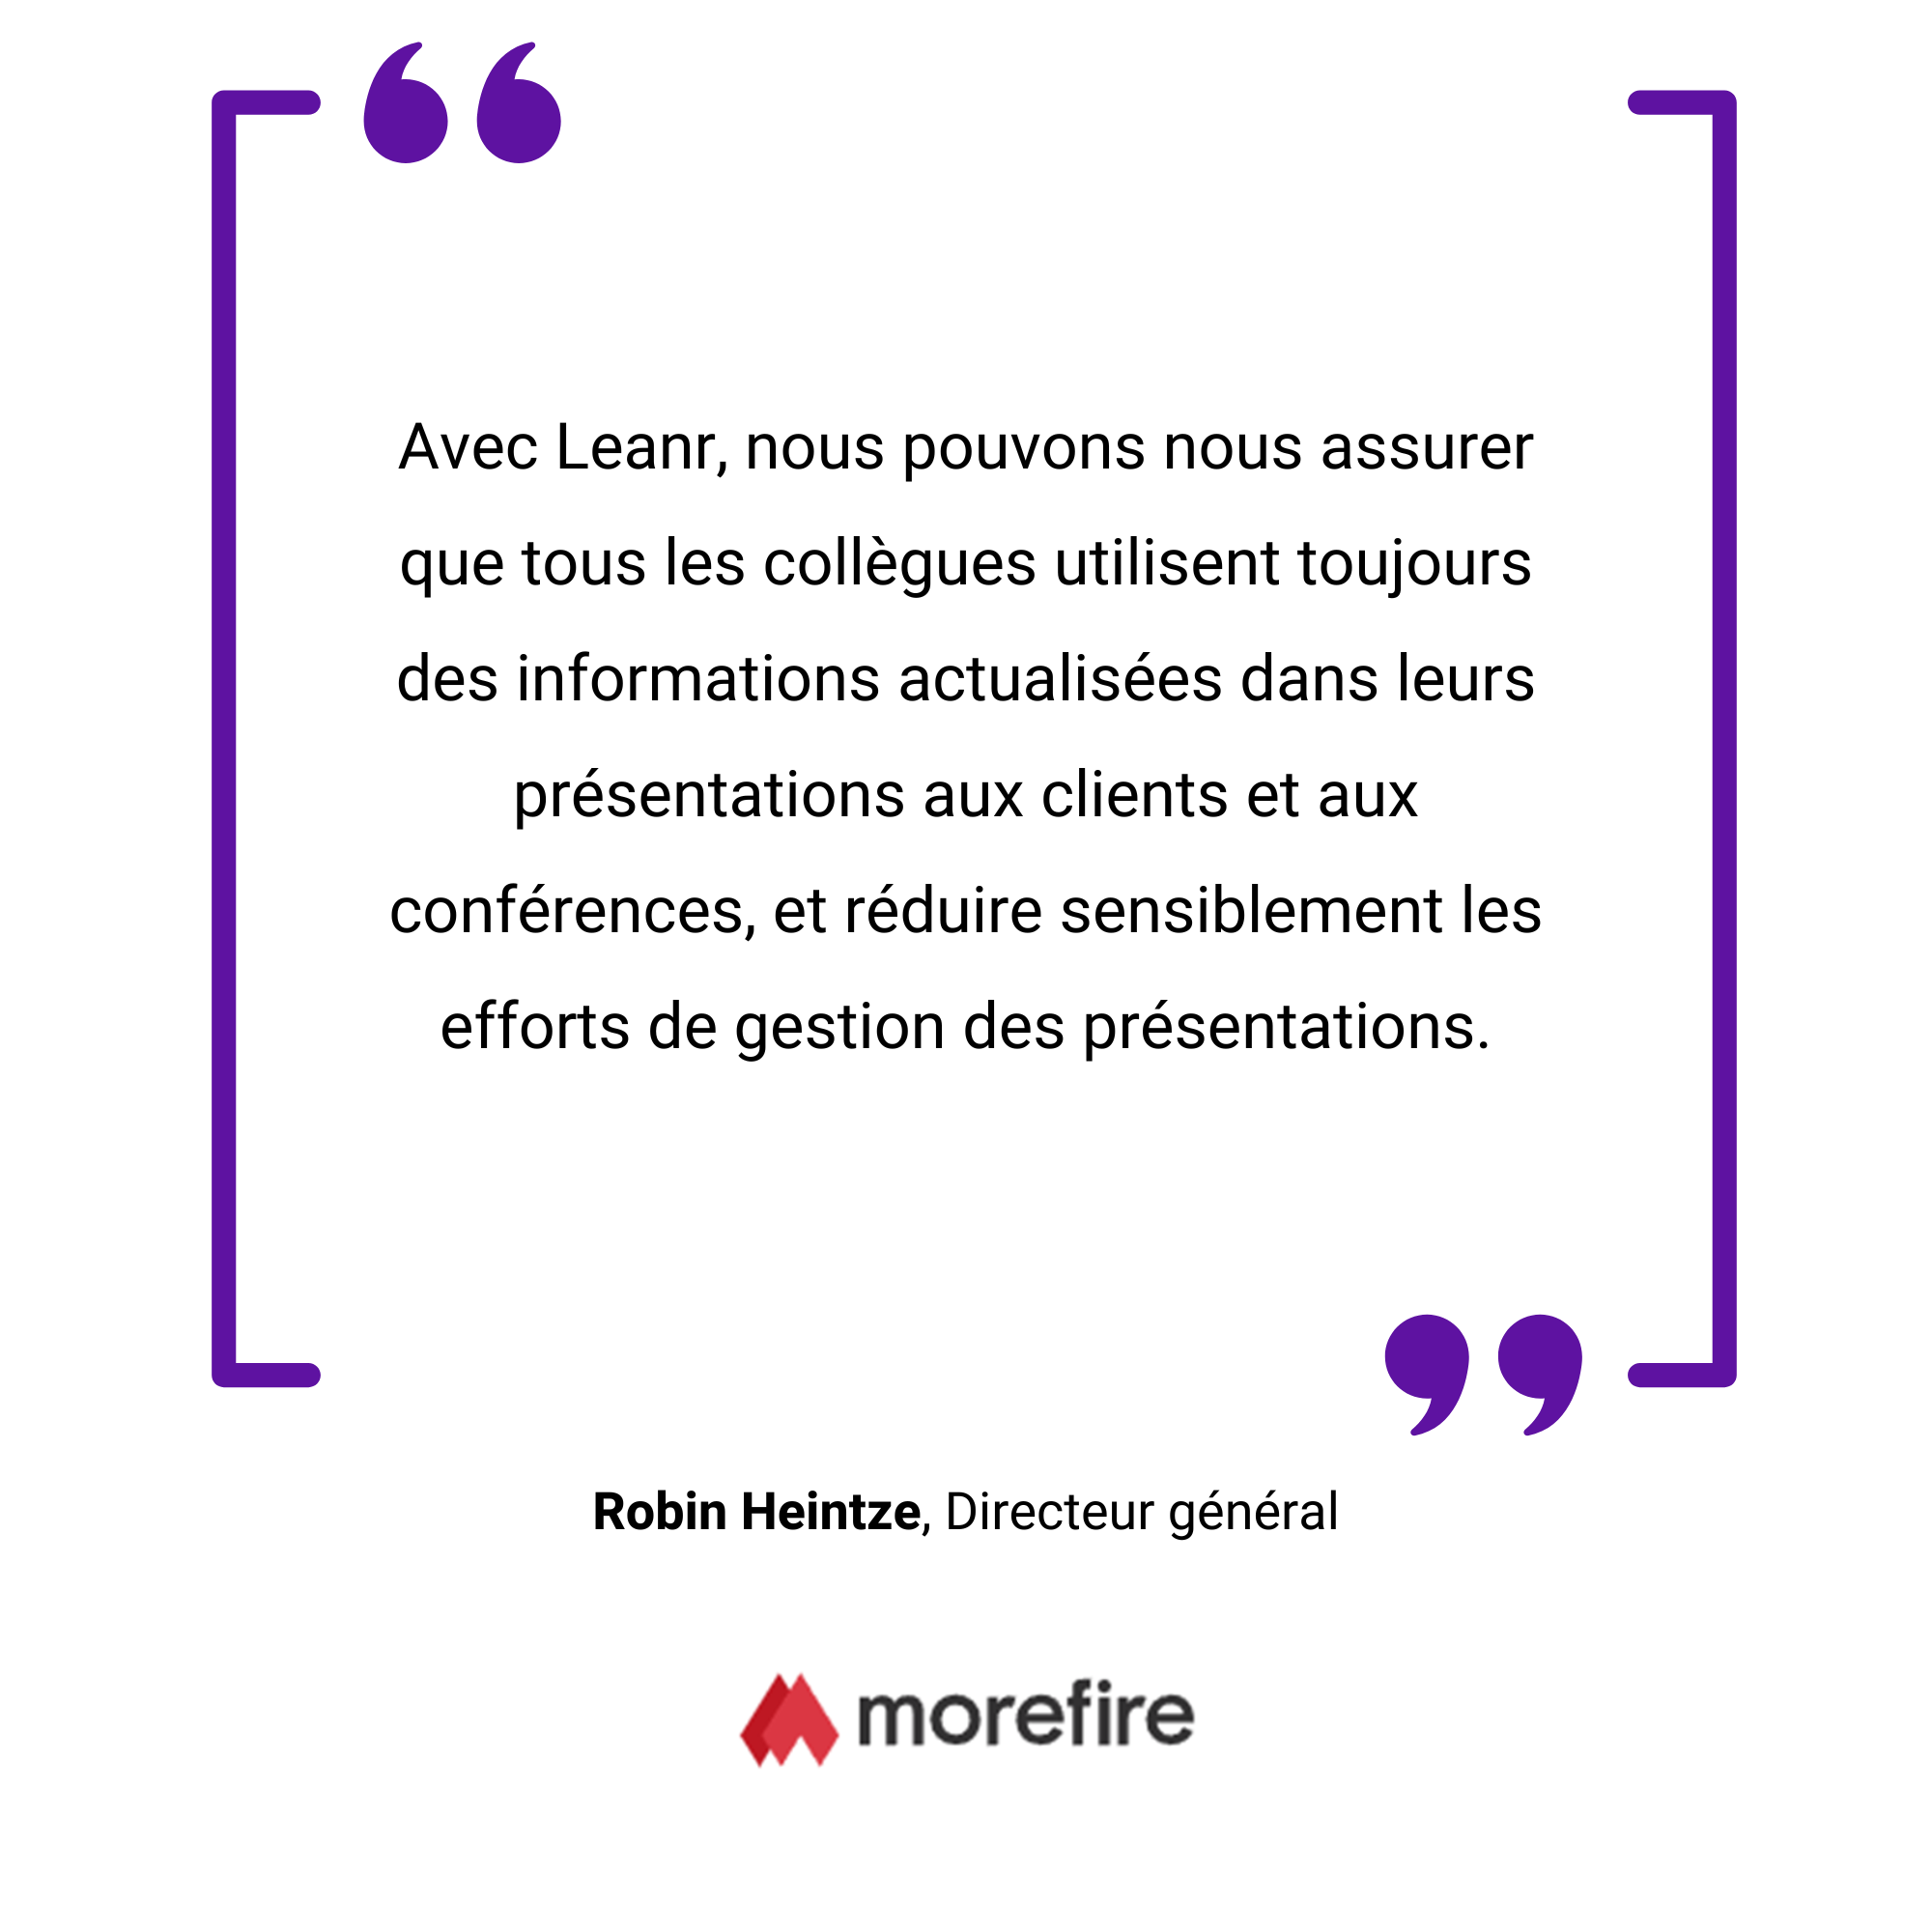 Une image d'un carré bordé de violet avec une citation en français de Robin Heintze, directeur chez morefire, mettant l'accent sur le travail d'équipe et le dévouement aux présentations clients.